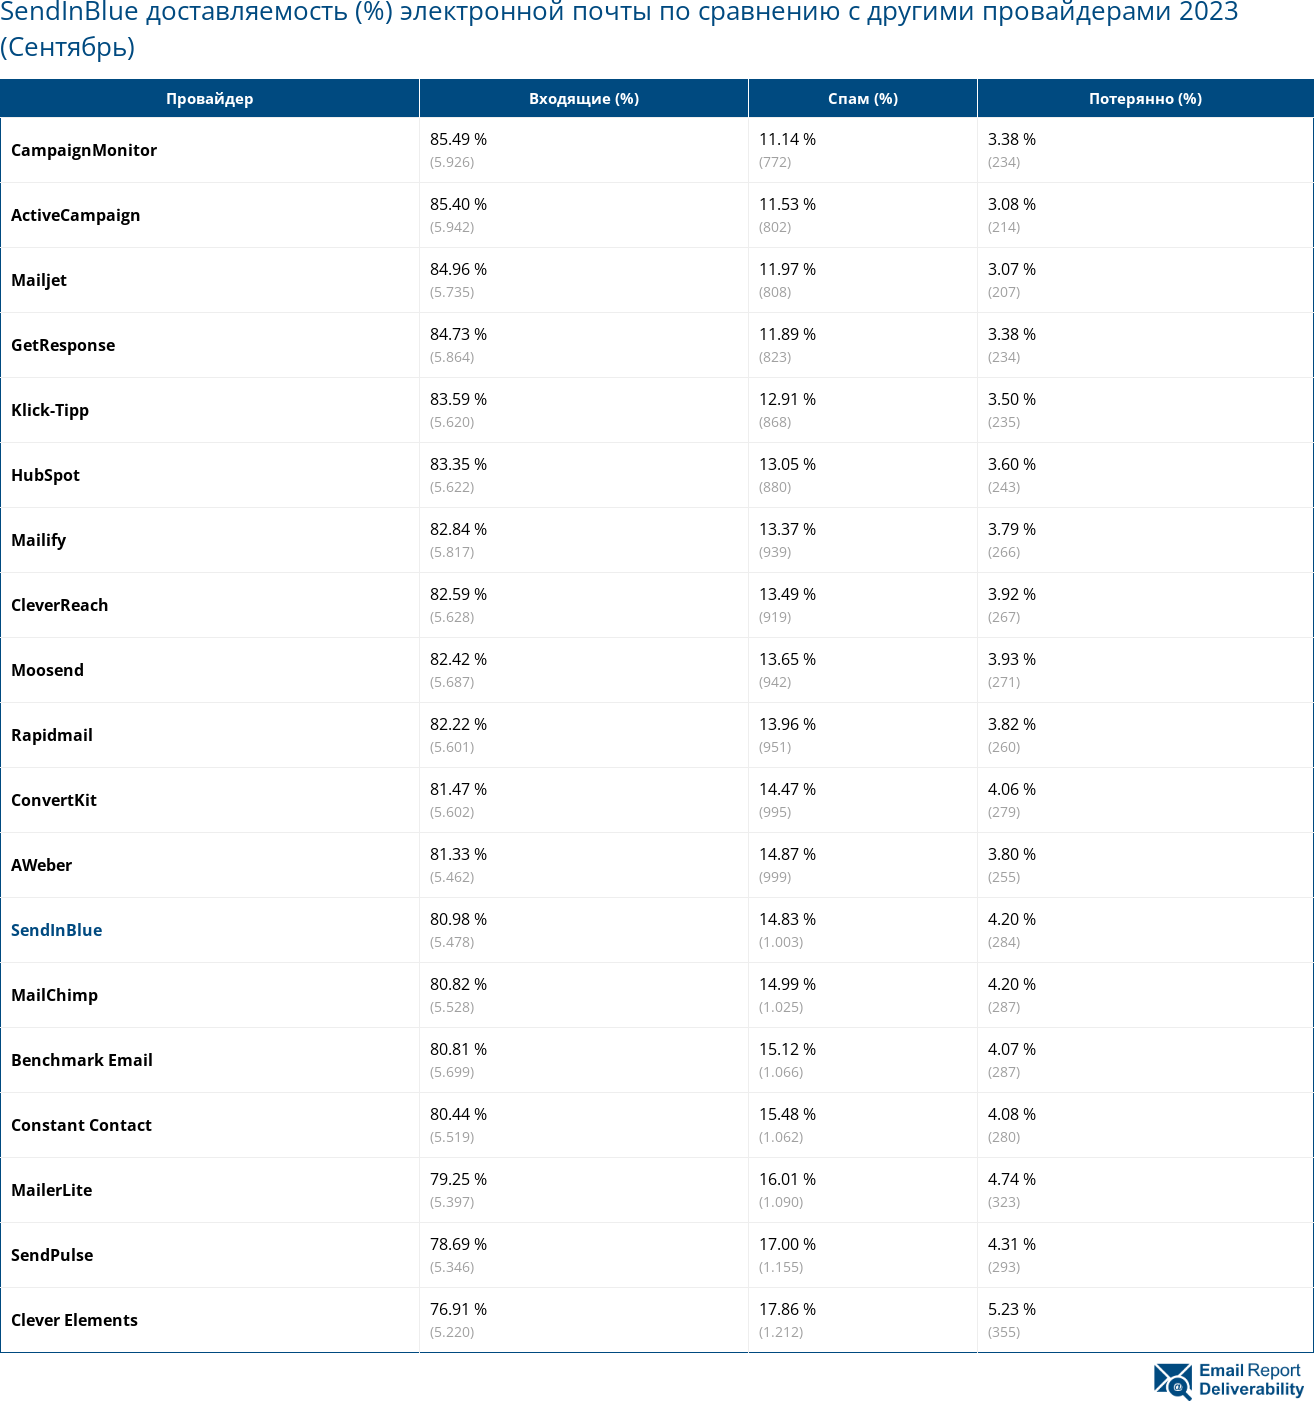 SendInBlue доставляемость (%) электронной почты по сравнению с другими провайдерами 2023 (Сентябрь)